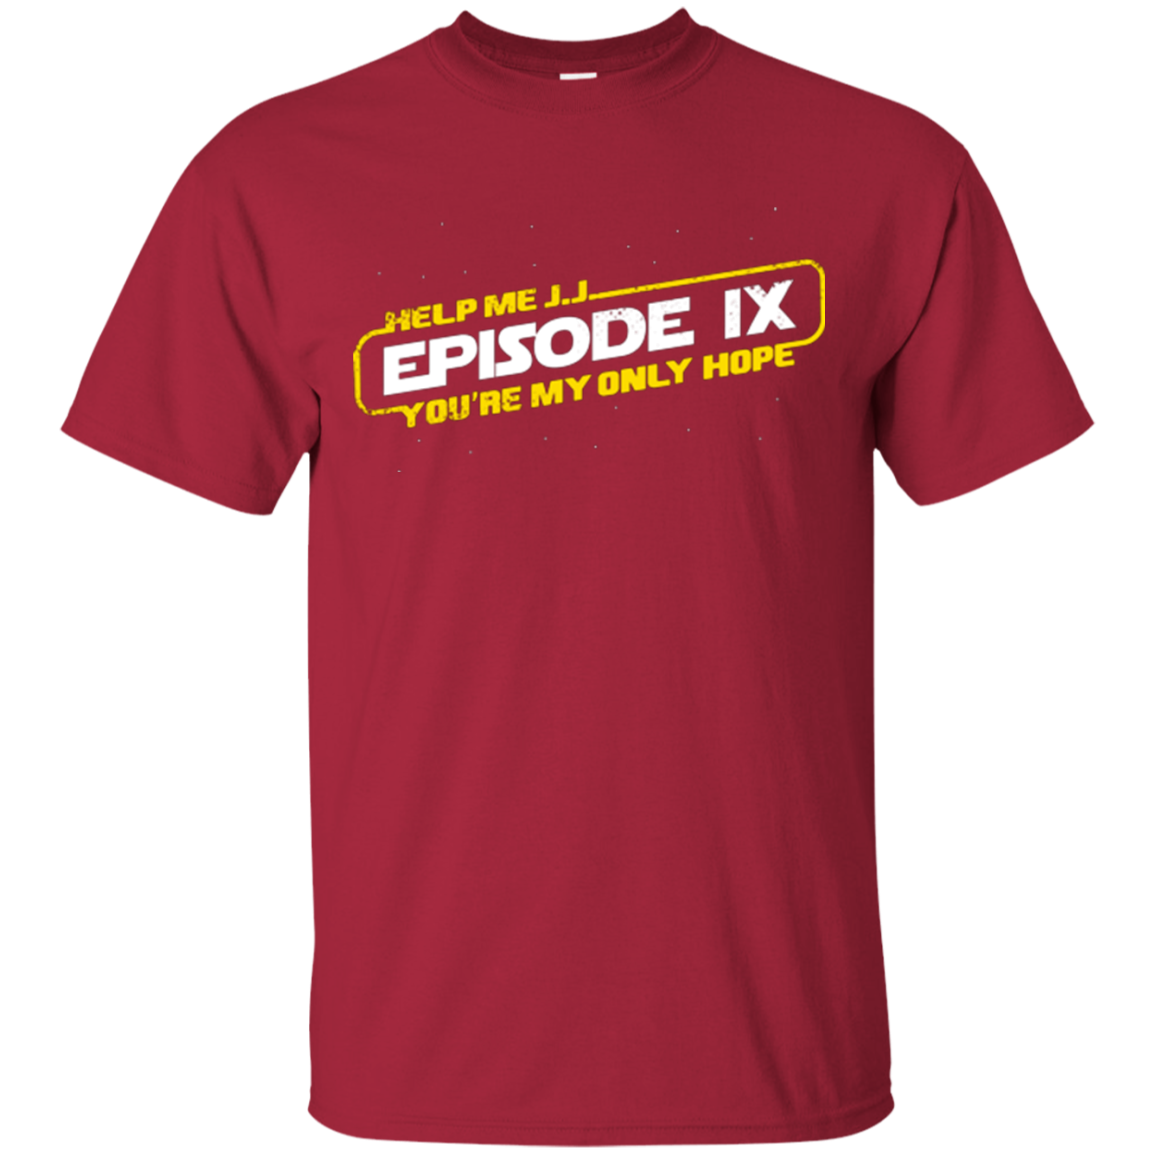 Episode IX T-Shirt